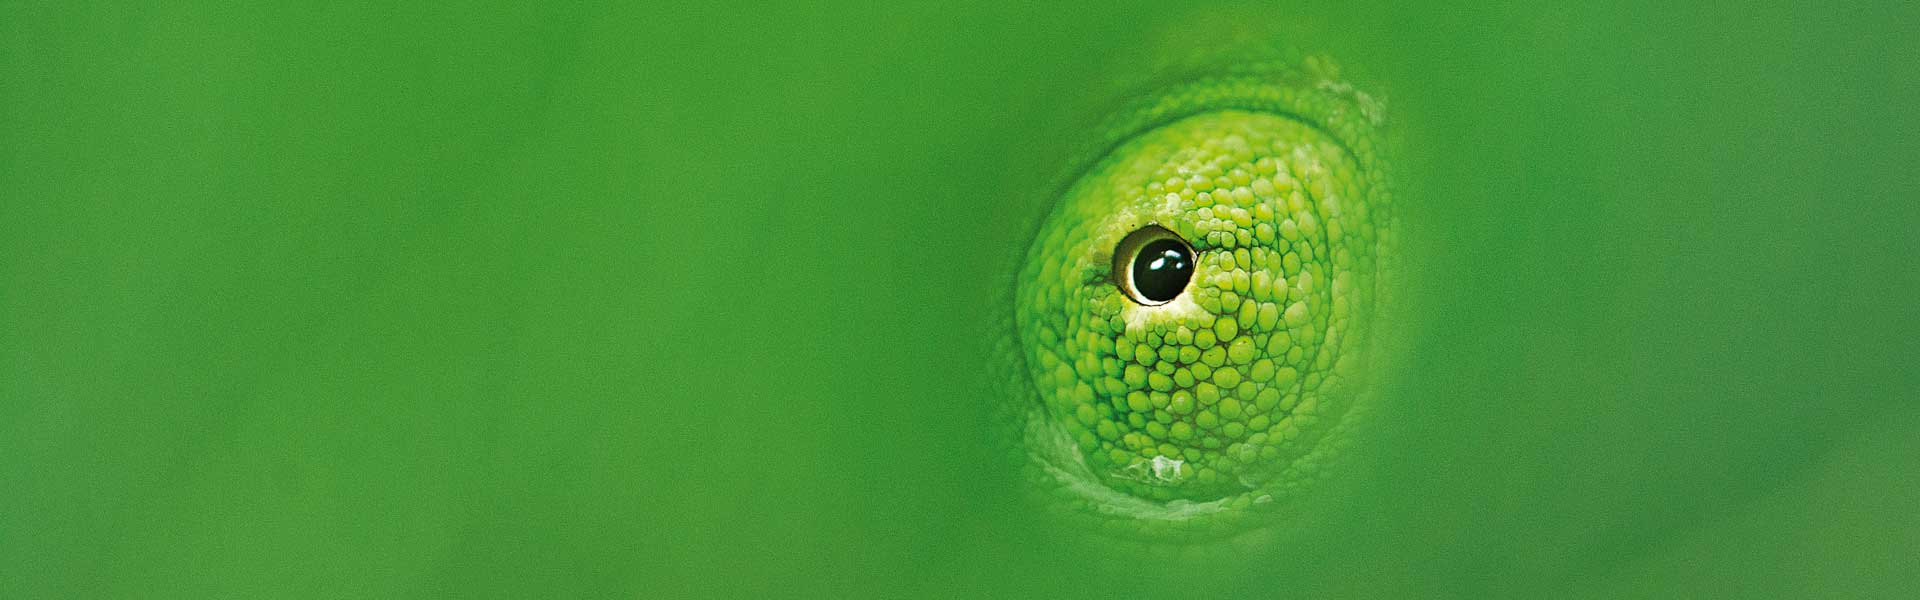 Chameleon Eye Chandrapur